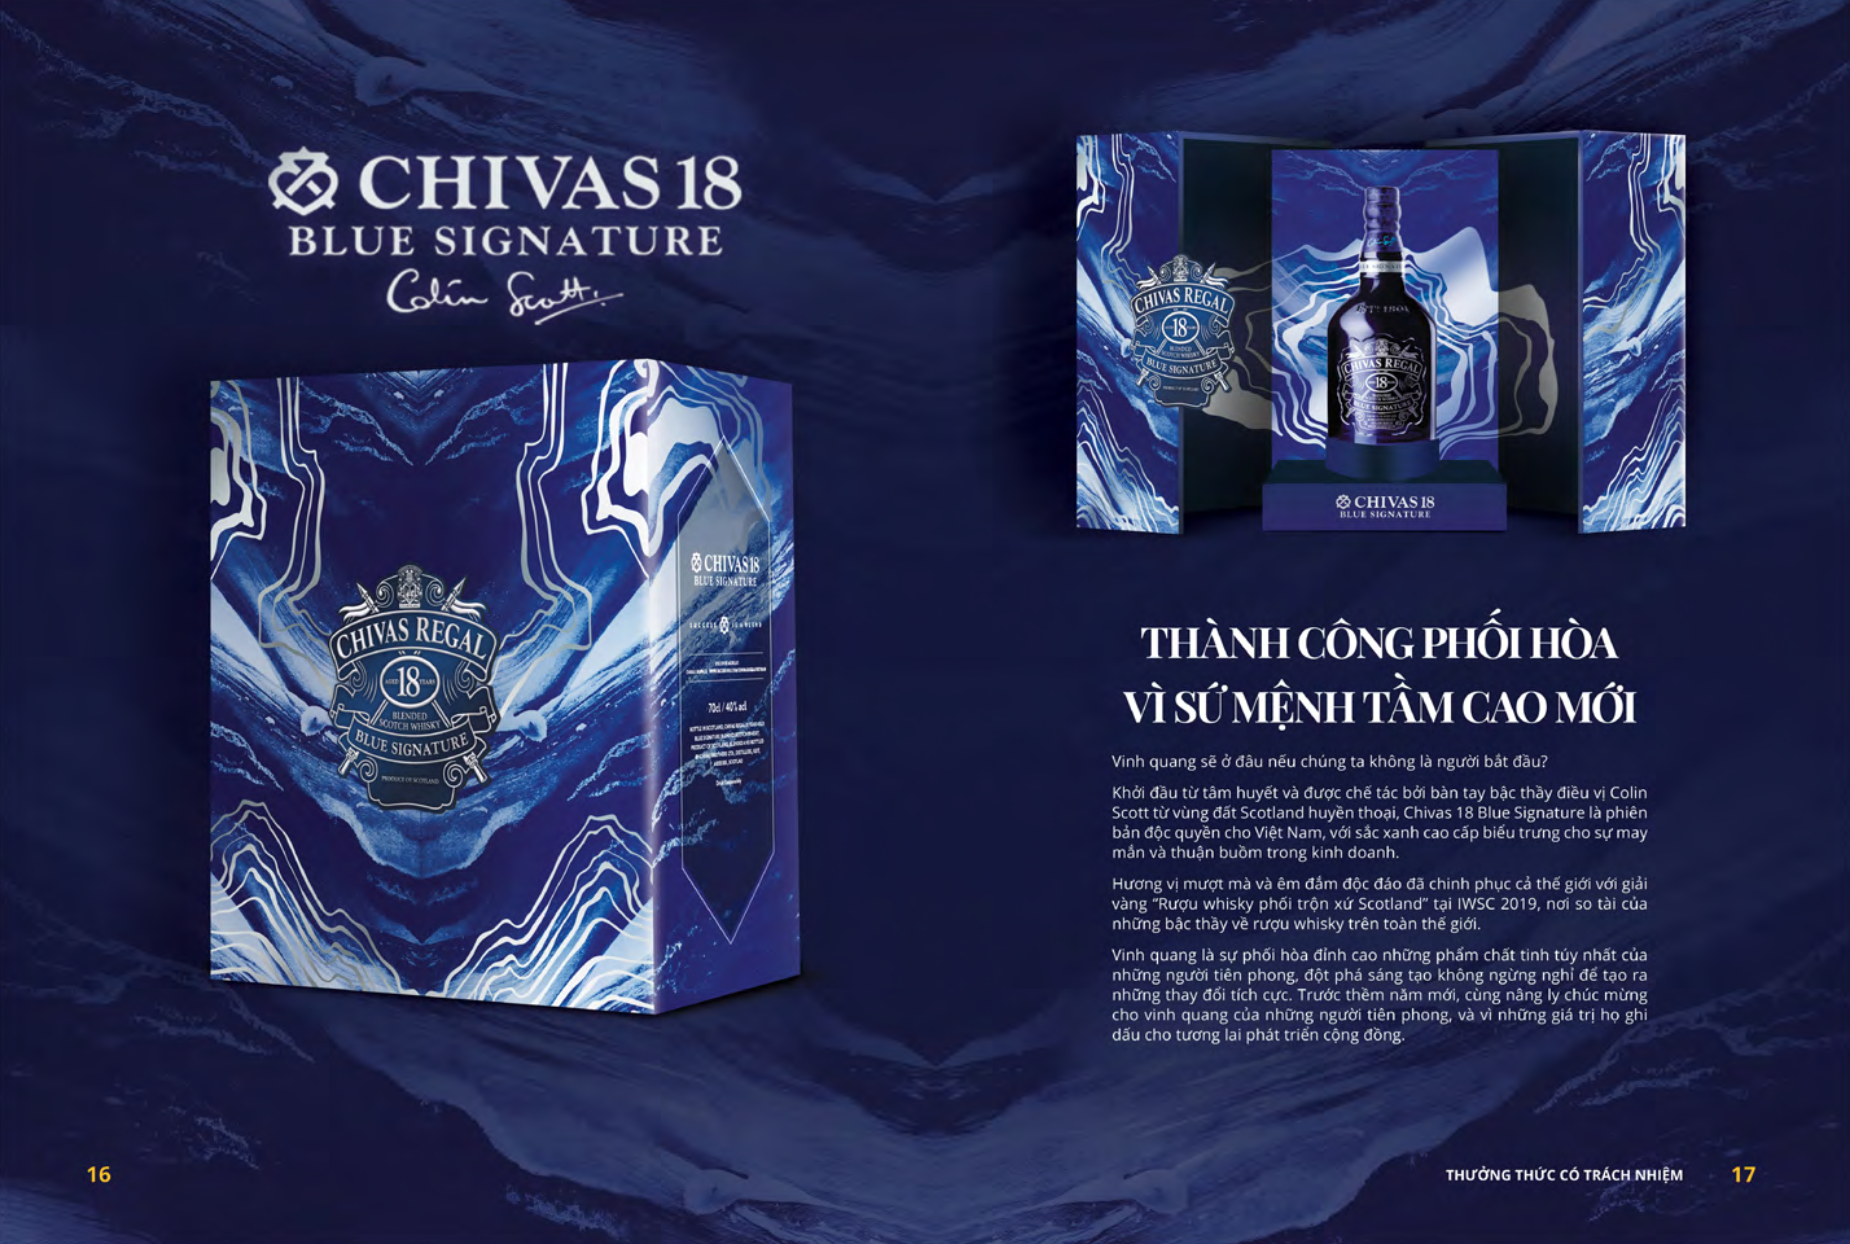 Chivas 18 blue signature